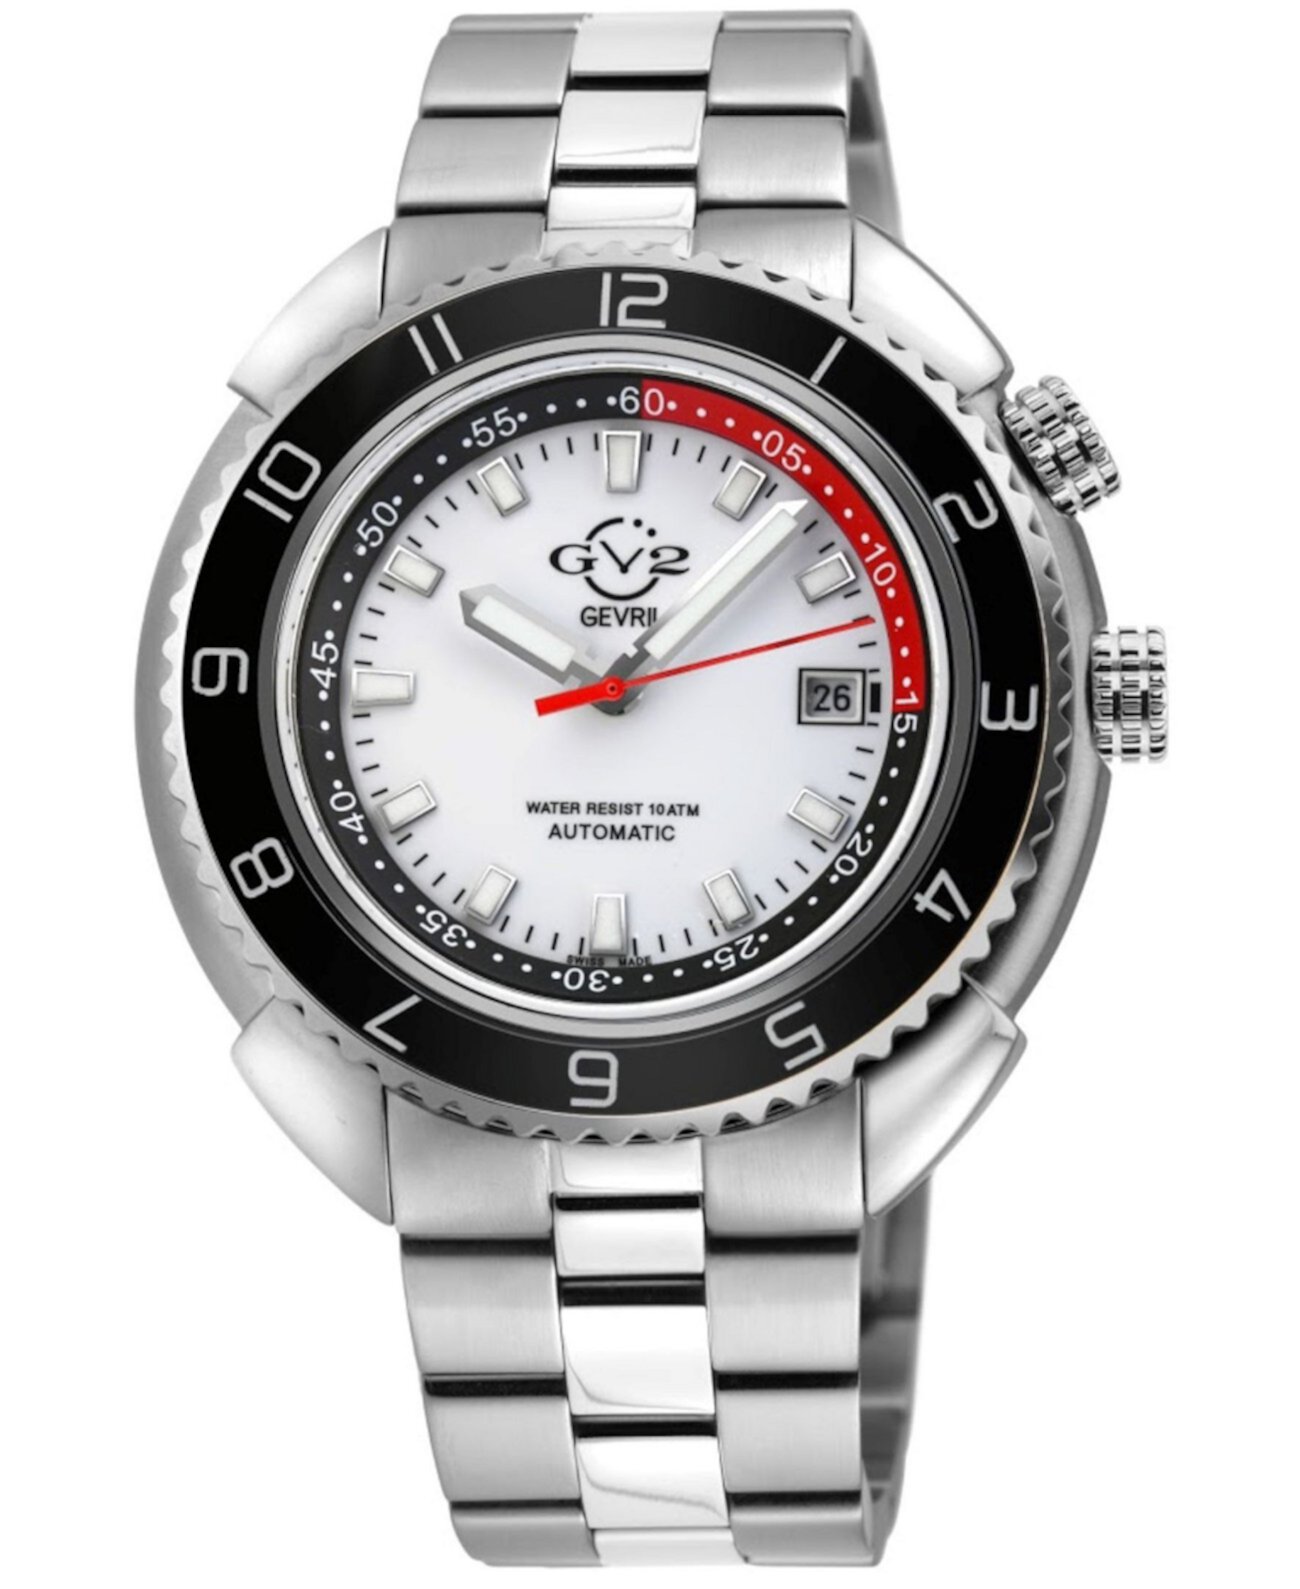 Мужские швейцарские часы с автоматическим браслетом Squalo серебристого цвета из нержавеющей стали GV2, 46 мм Gevril